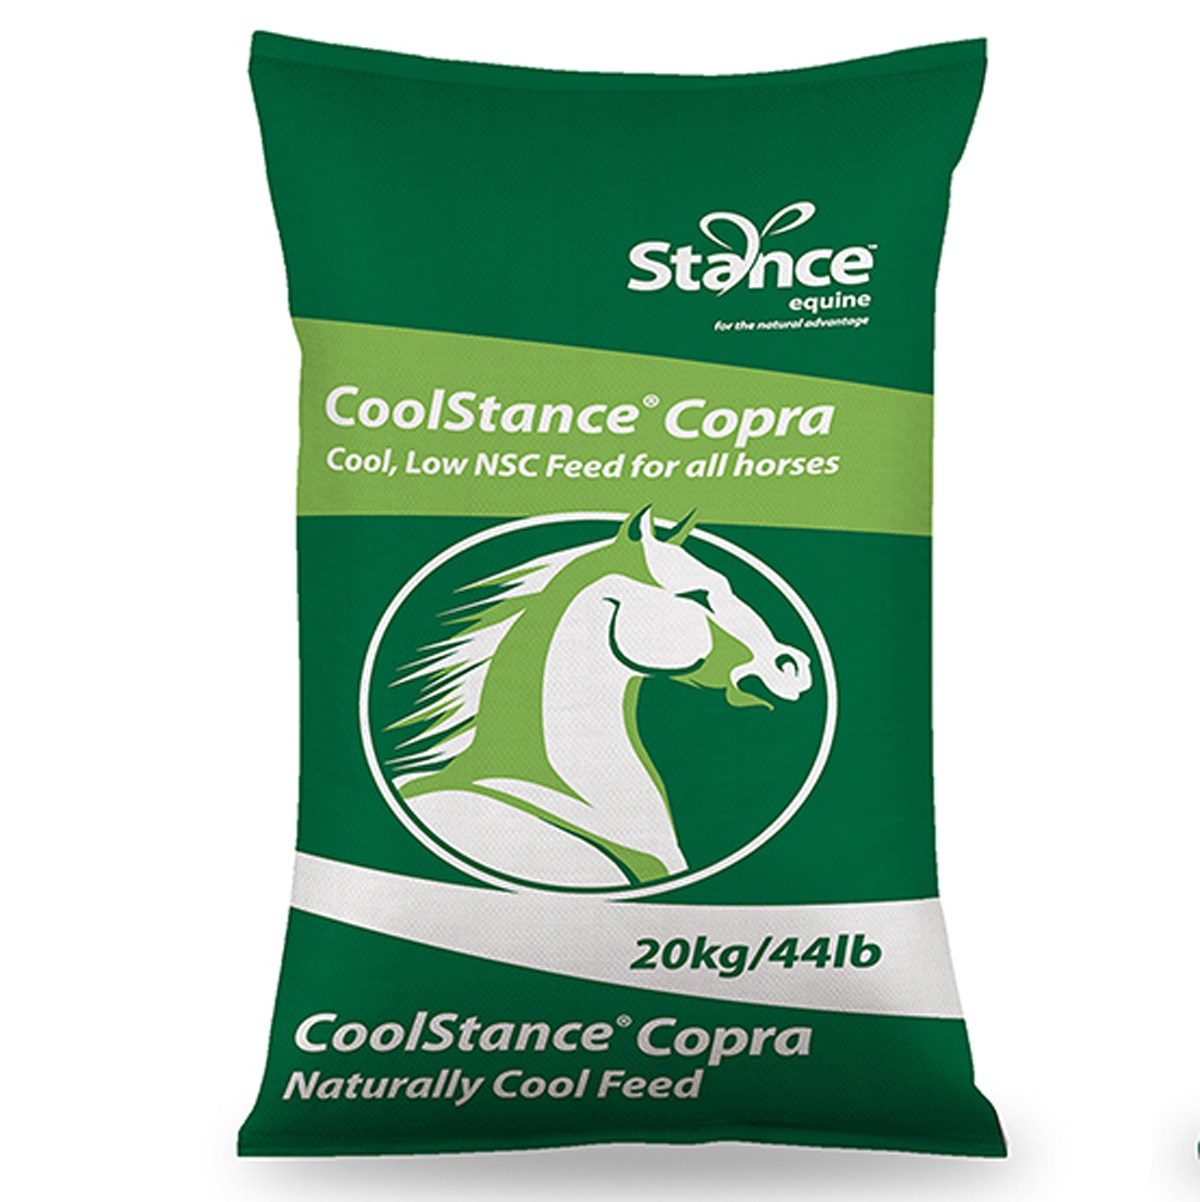 CoolStance® Copra